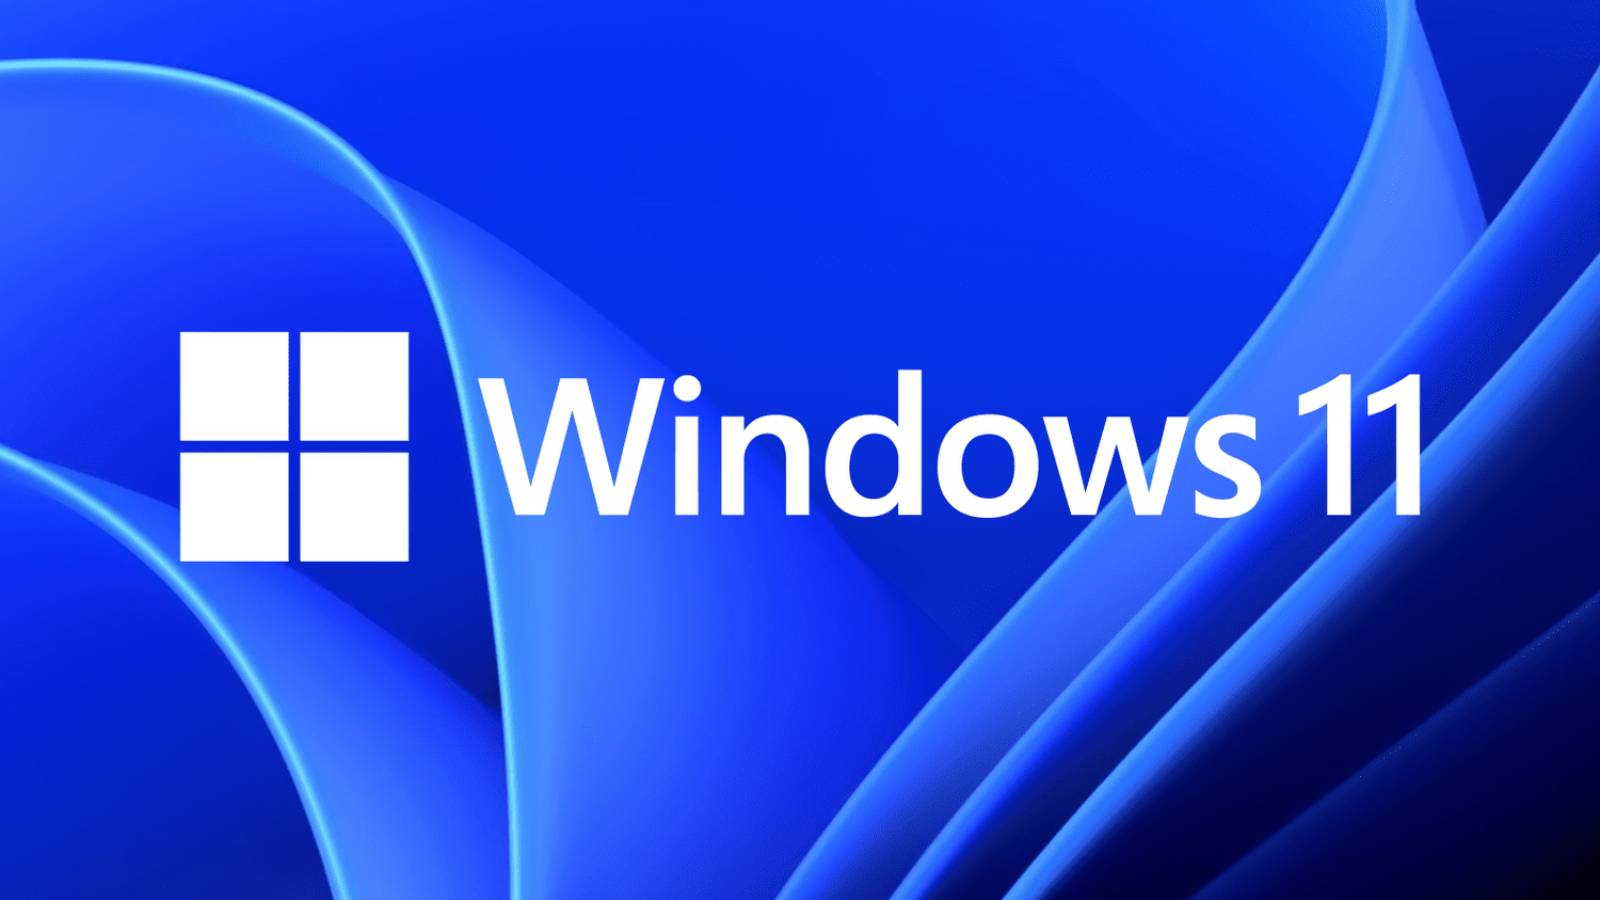 Microsoft Wichtige ÄNDERUNGEN Windows 11 Europa Pflicht Europäische Kommission